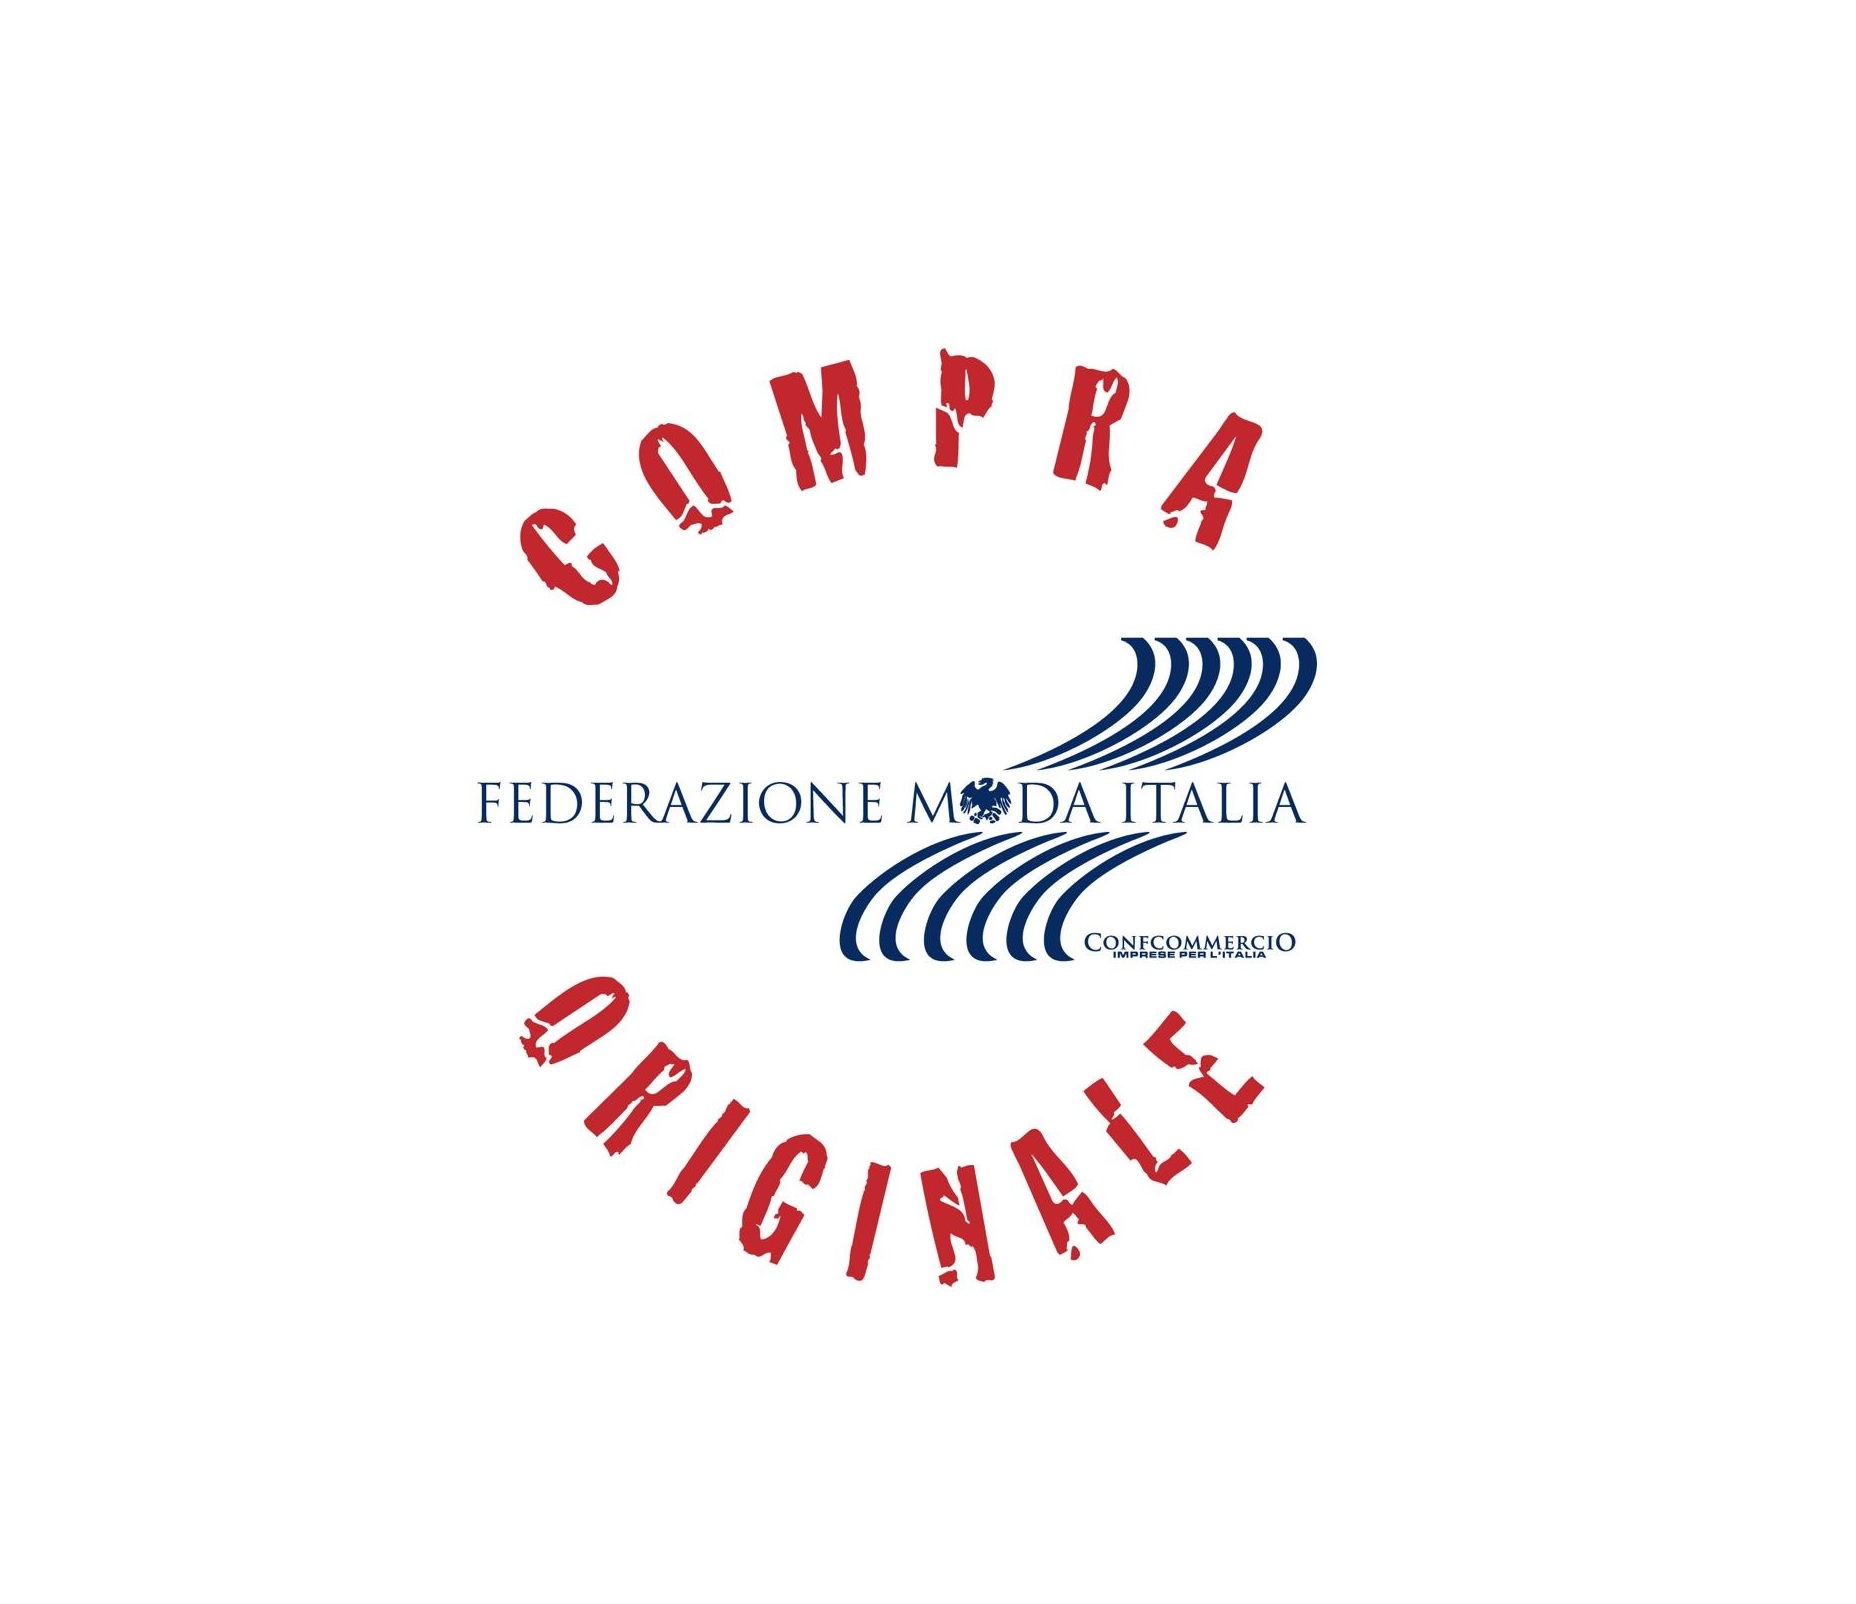 COMPRA ORIGINALE: IL VADEMECUM DI FEDERAZIONE MODA ITALIA CON 10 CONSIGLI PRATICI